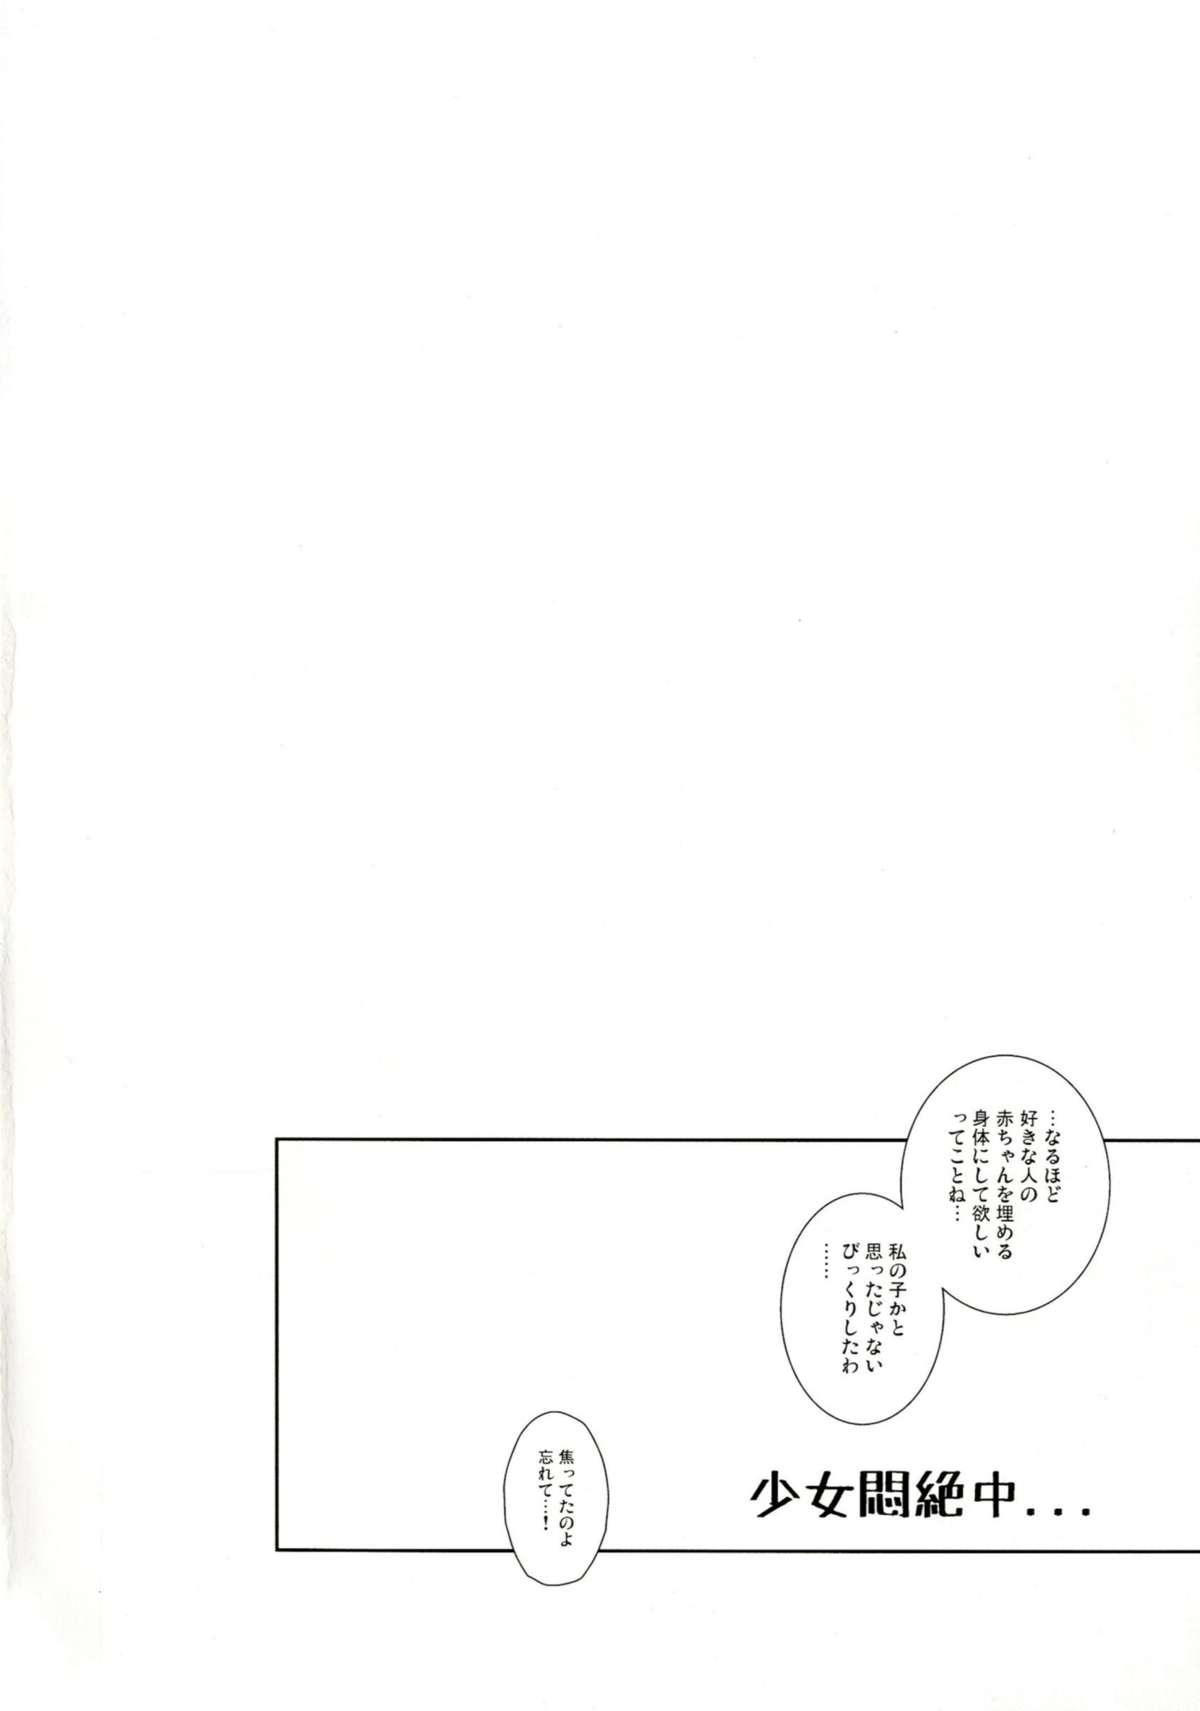 Orgy Kagehinata wa Tokedashite - Touhou project Sperm - Page 4